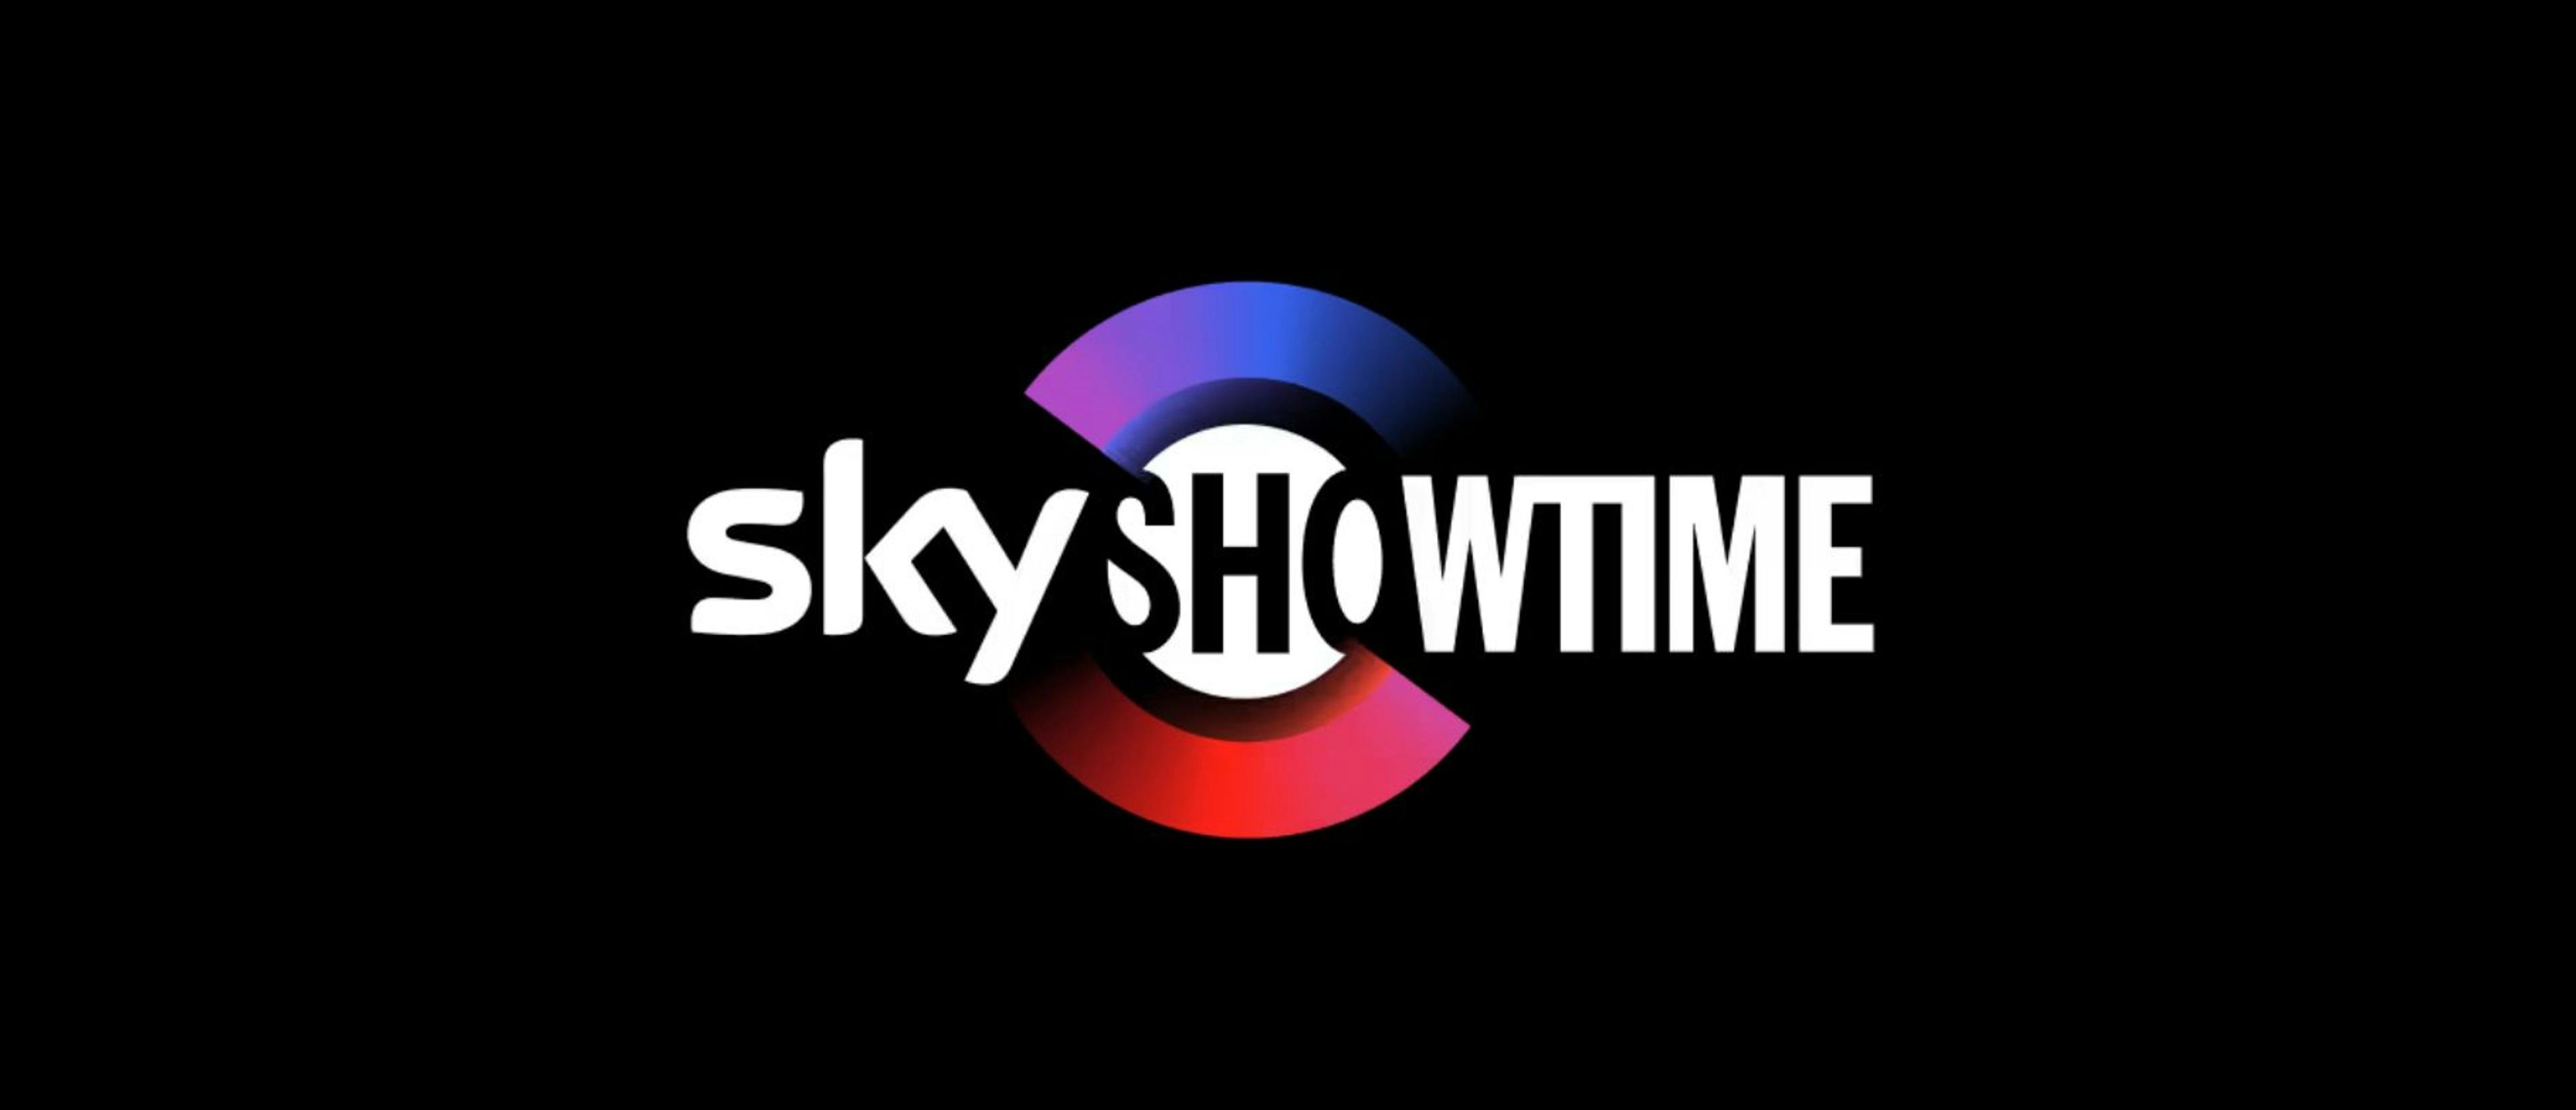 SkyShowtime llega en febrero a España